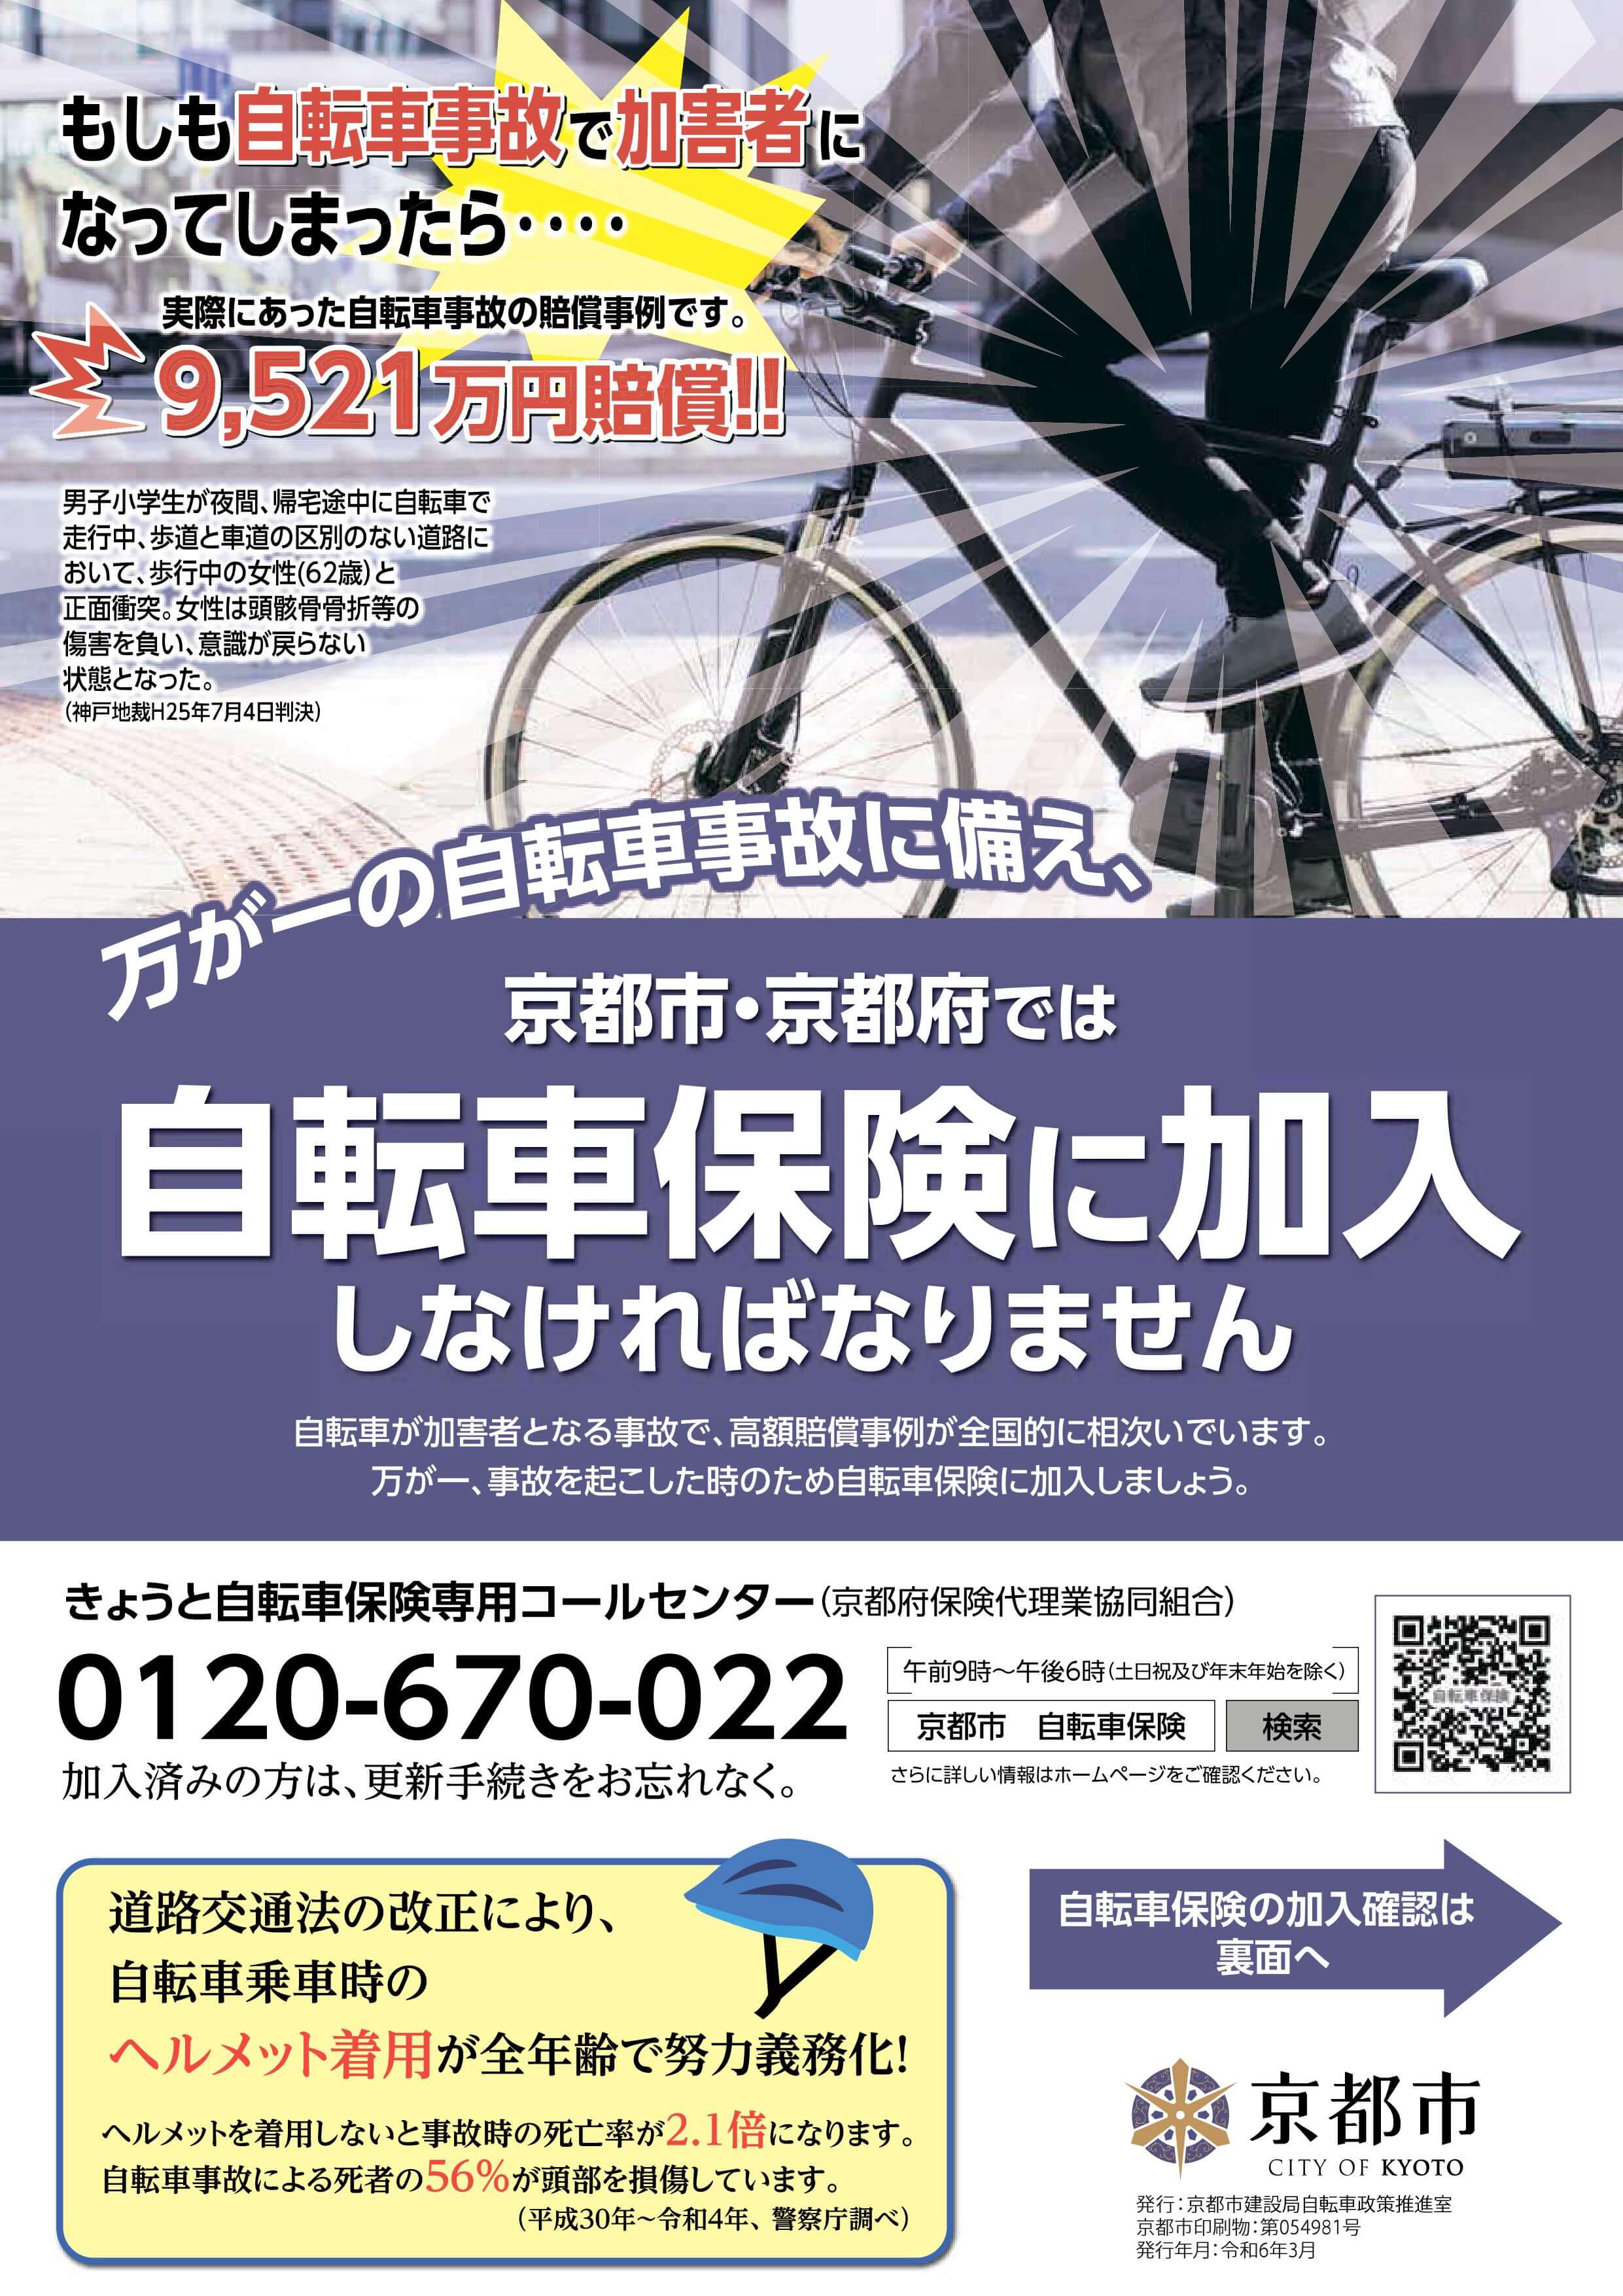 京都市は、４月１日より自転車保険義務化へ。